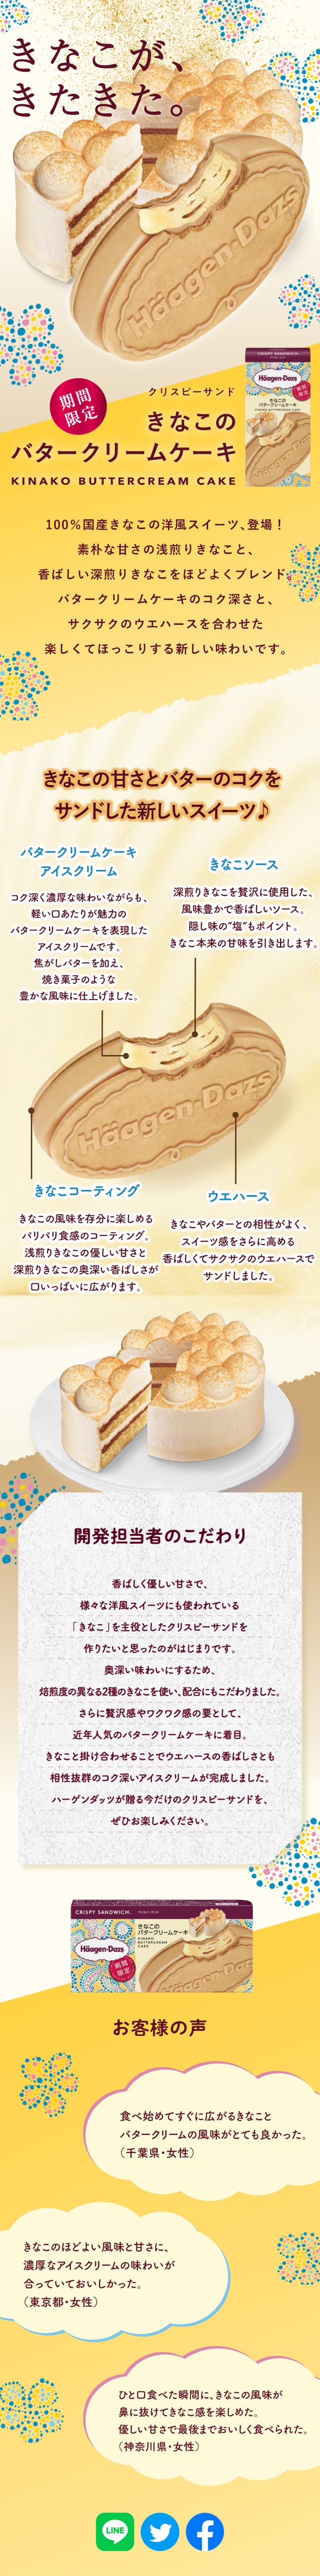 きなこのバタークリームケーキ_sp_1